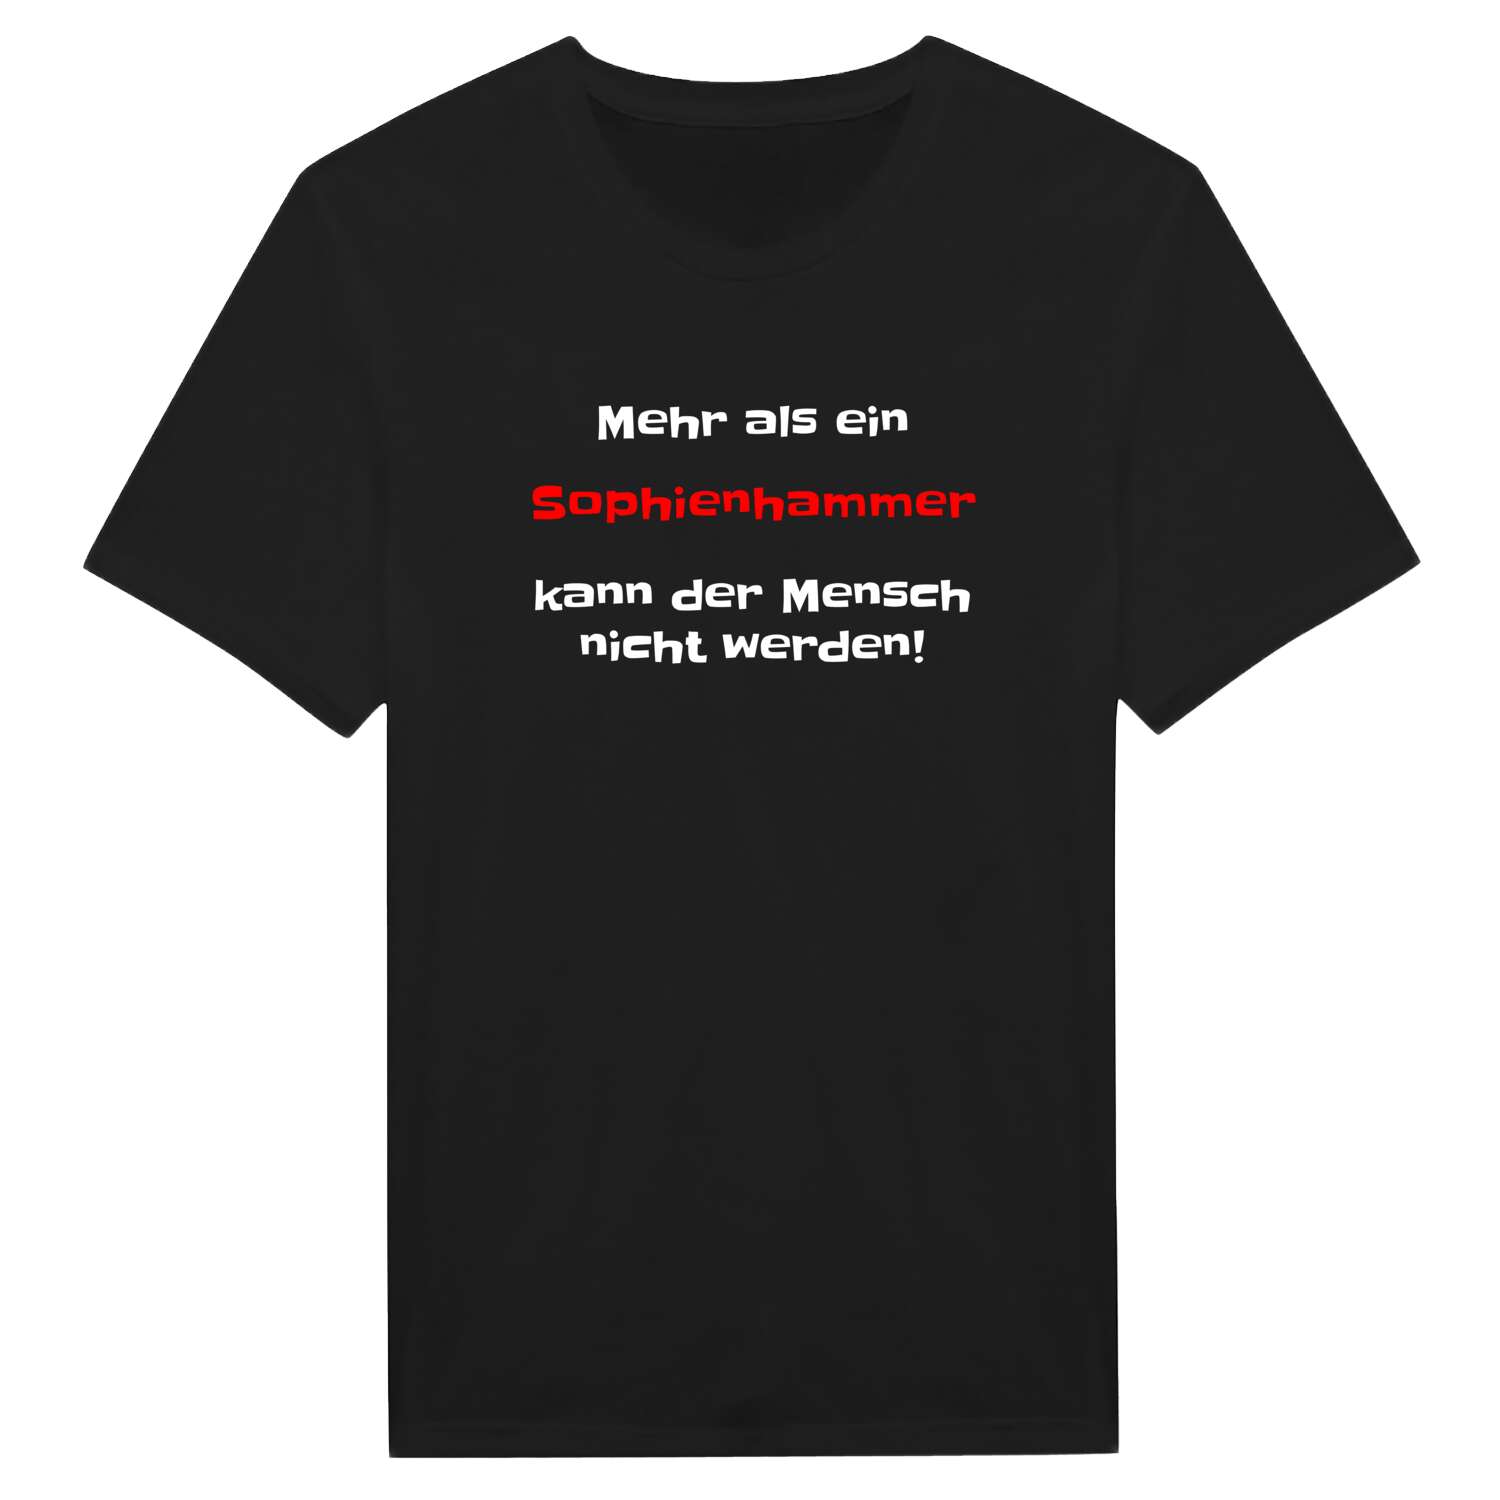 Sophienhamm T-Shirt »Mehr als ein«